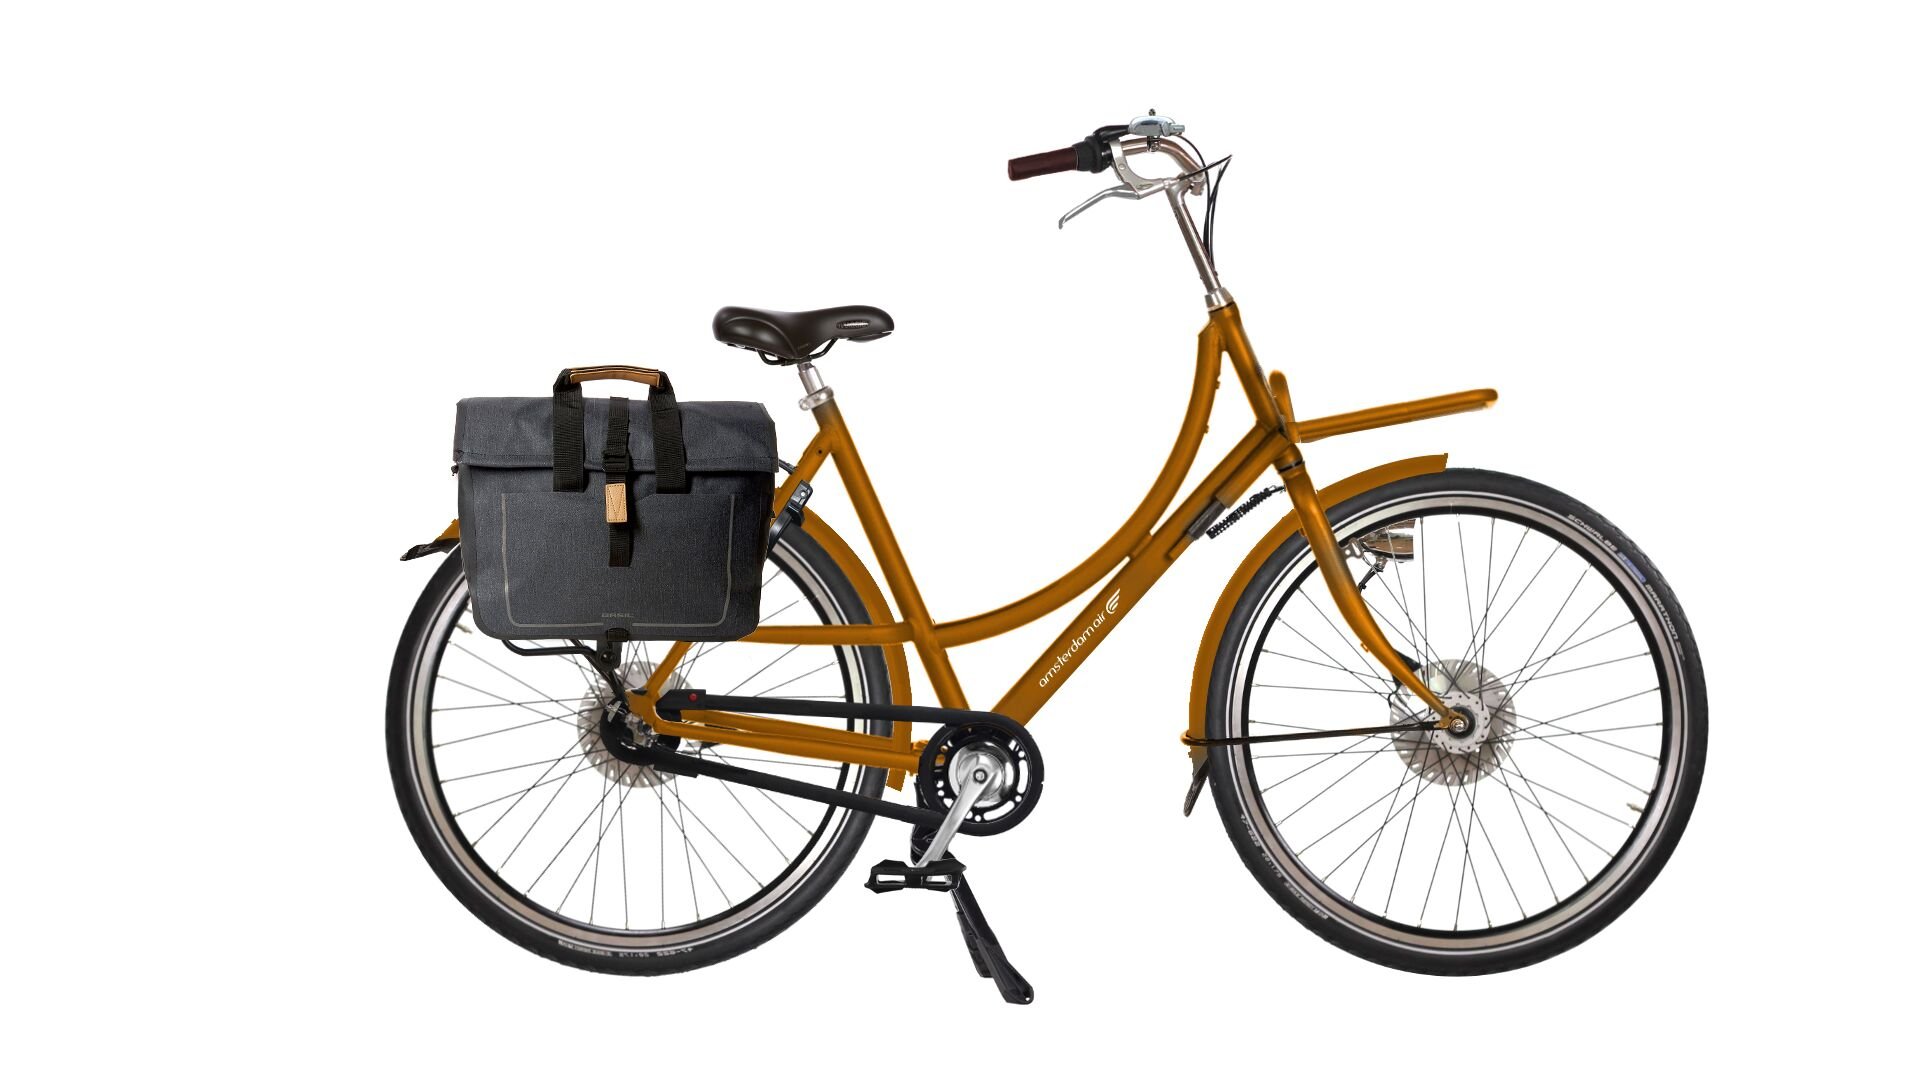 Vous voulez acheter une housse de vélo cargo pour votre beau vélo